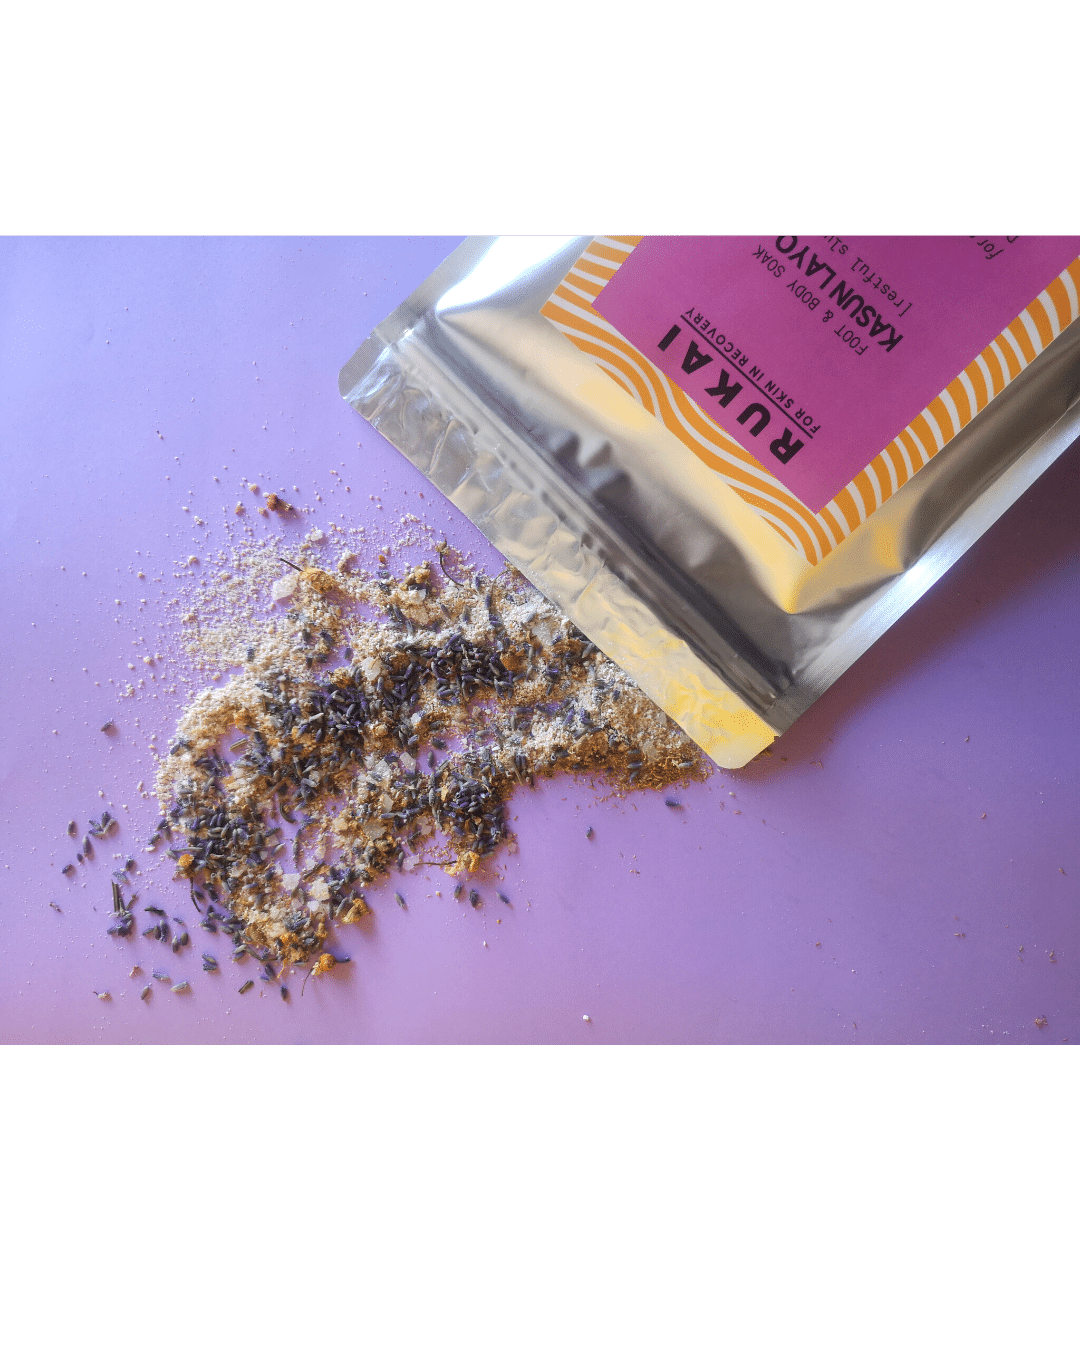 Lavender & Camomile Bath Salts - Kasun Layo O